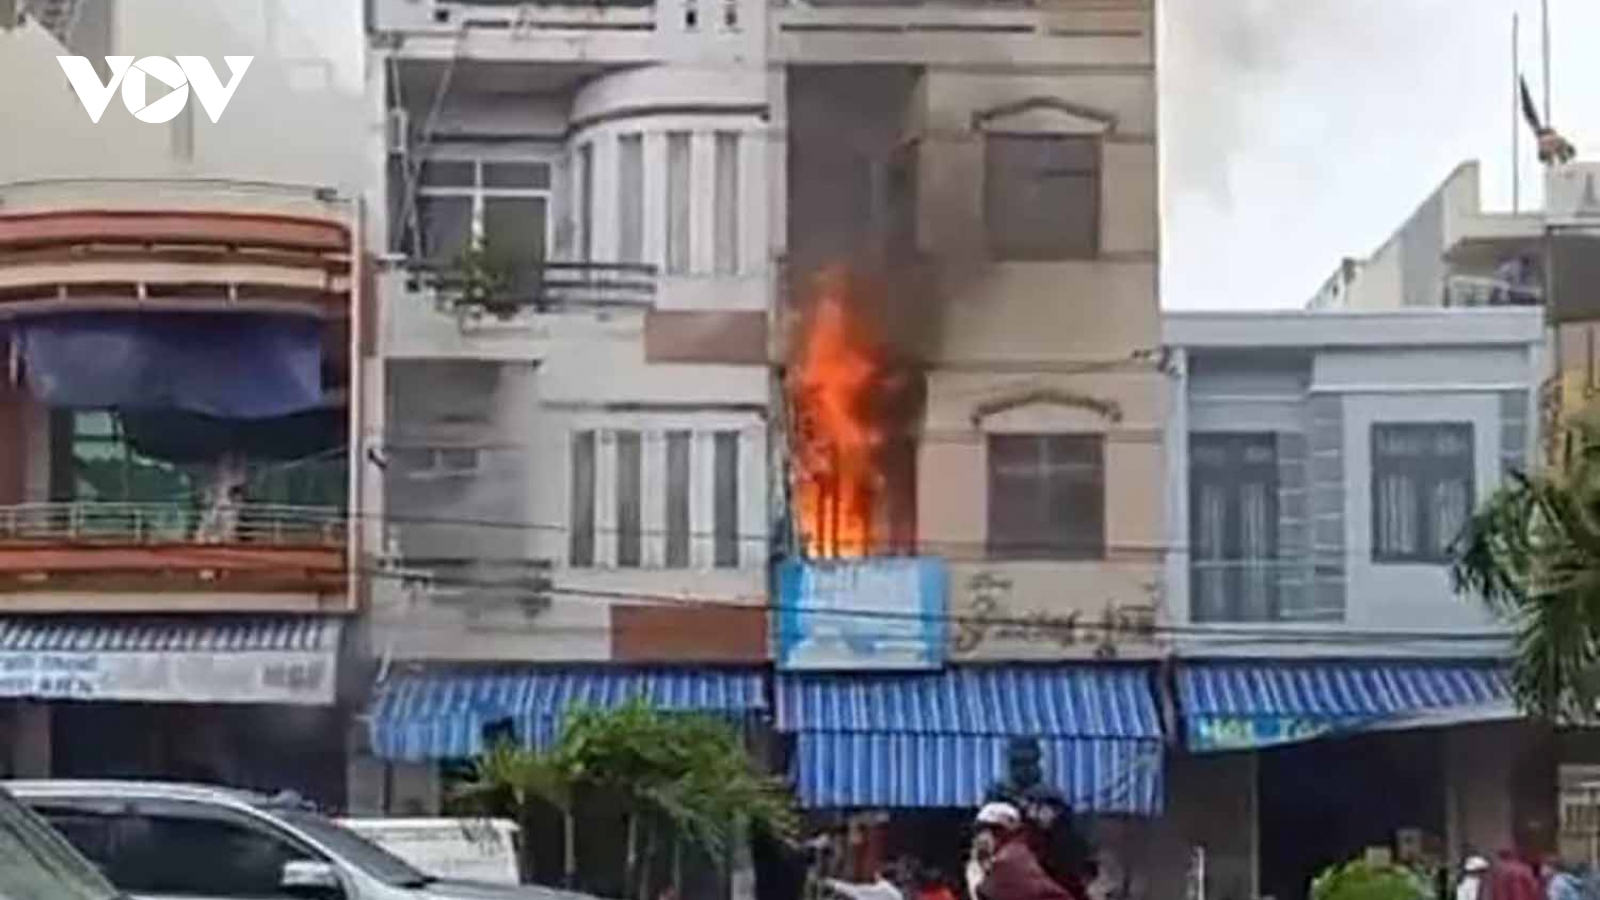 Liên tiếp xảy ra 2 vụ cháy nhà ở Bình Định khi bão số 12 đổ bộ